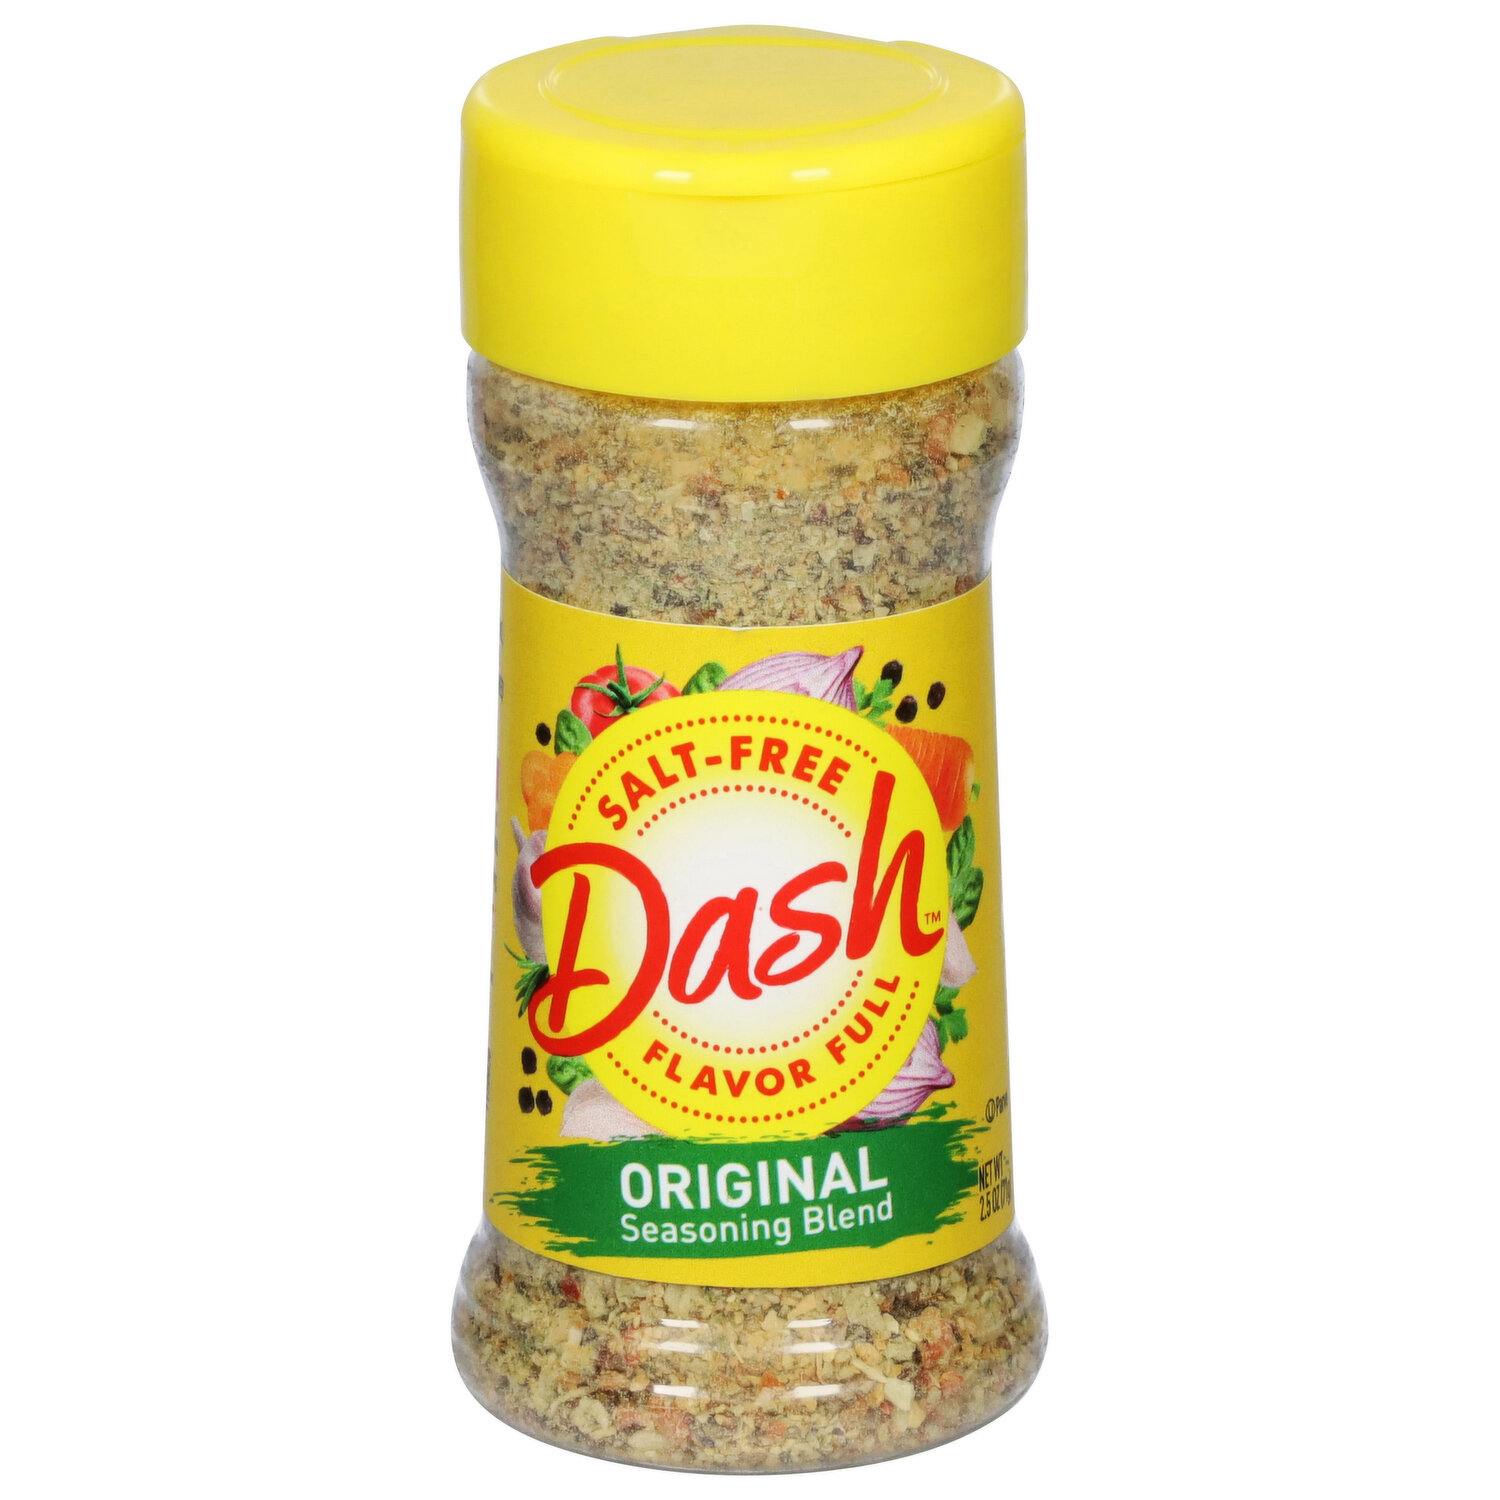 Dash Salt-Free Seasoning Blend, Lemon Pepper, 2.5 Ounce